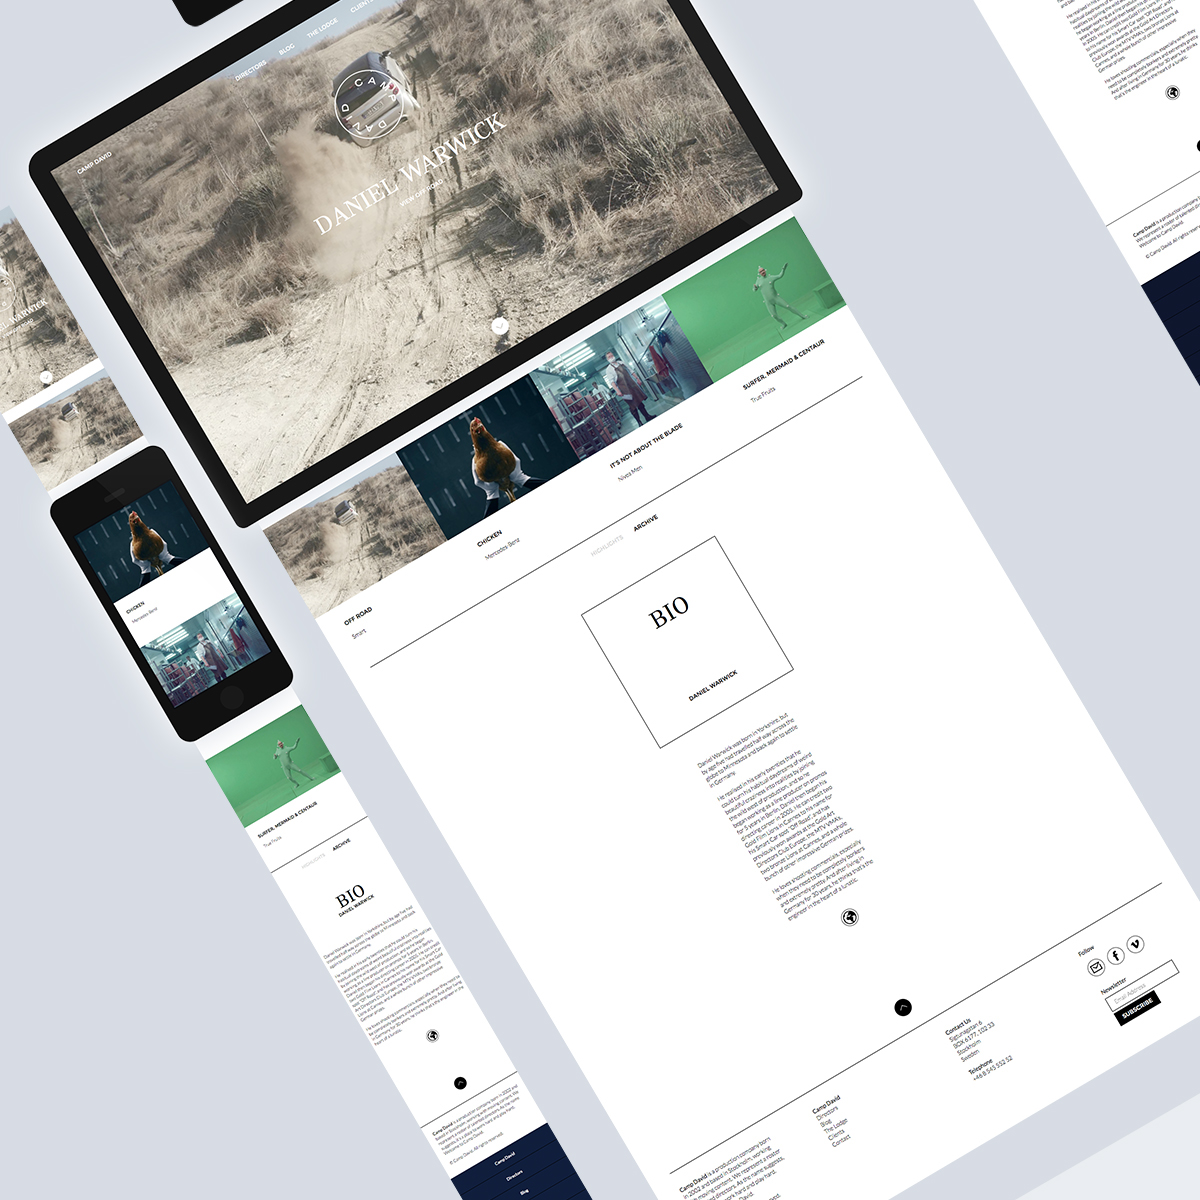 fabrik design Website portfolio Platform Responsive Web mobile tablet desktop SAAS camp david Production company Stockholm